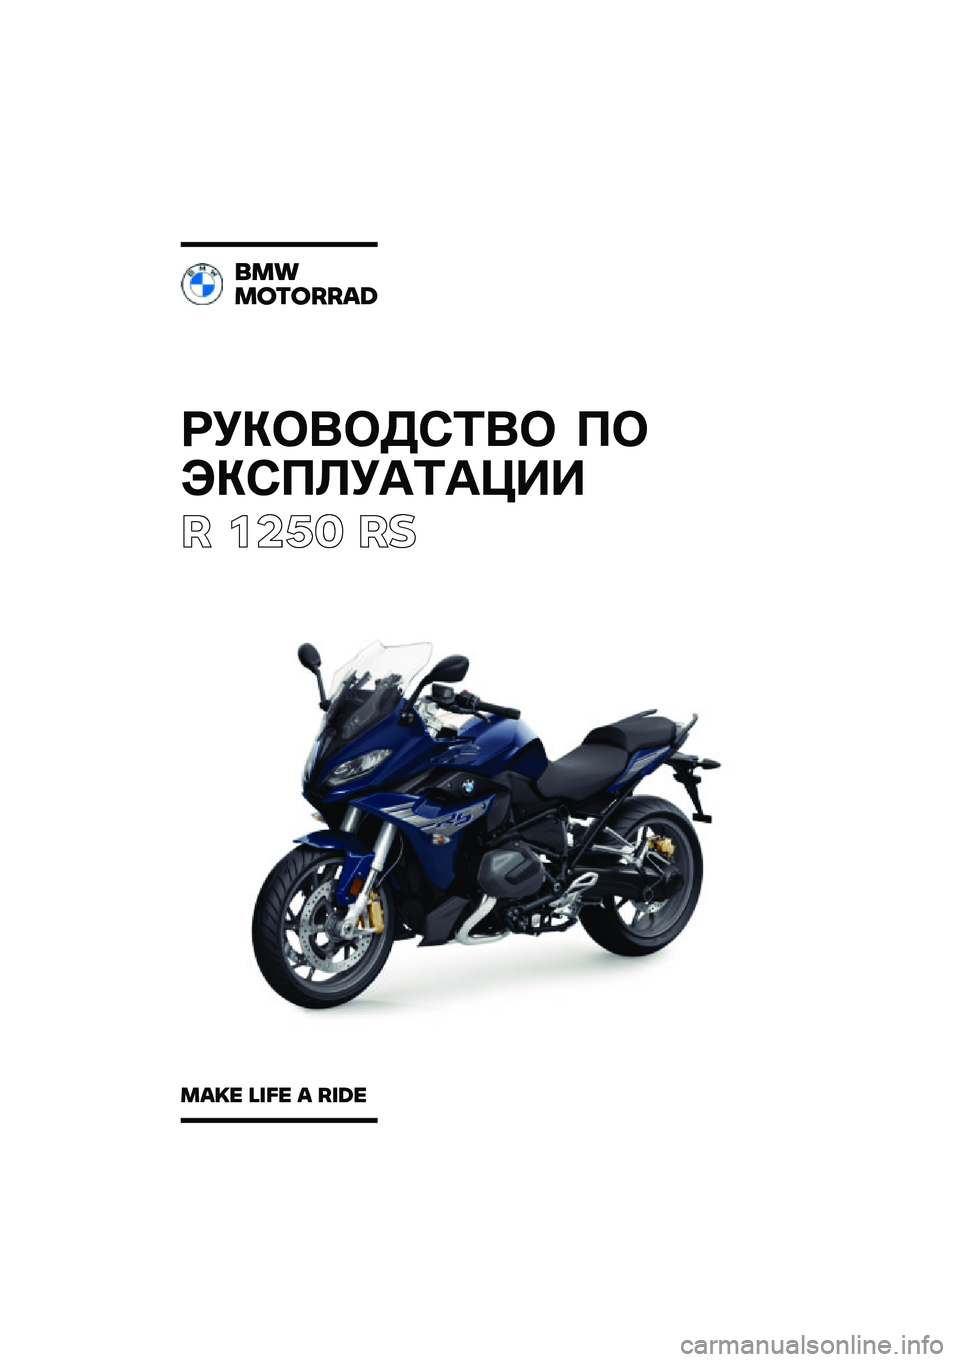 BMW MOTORRAD R 1250 RS 2021  Руководство по эксплуатации (in Russian) ��������\b�	�� �
�
���\b�
�\f��
�	�
���
� ����	 ��
���
�������\b�	
��\b�
� �\f�
�� �\b ��
�	� 